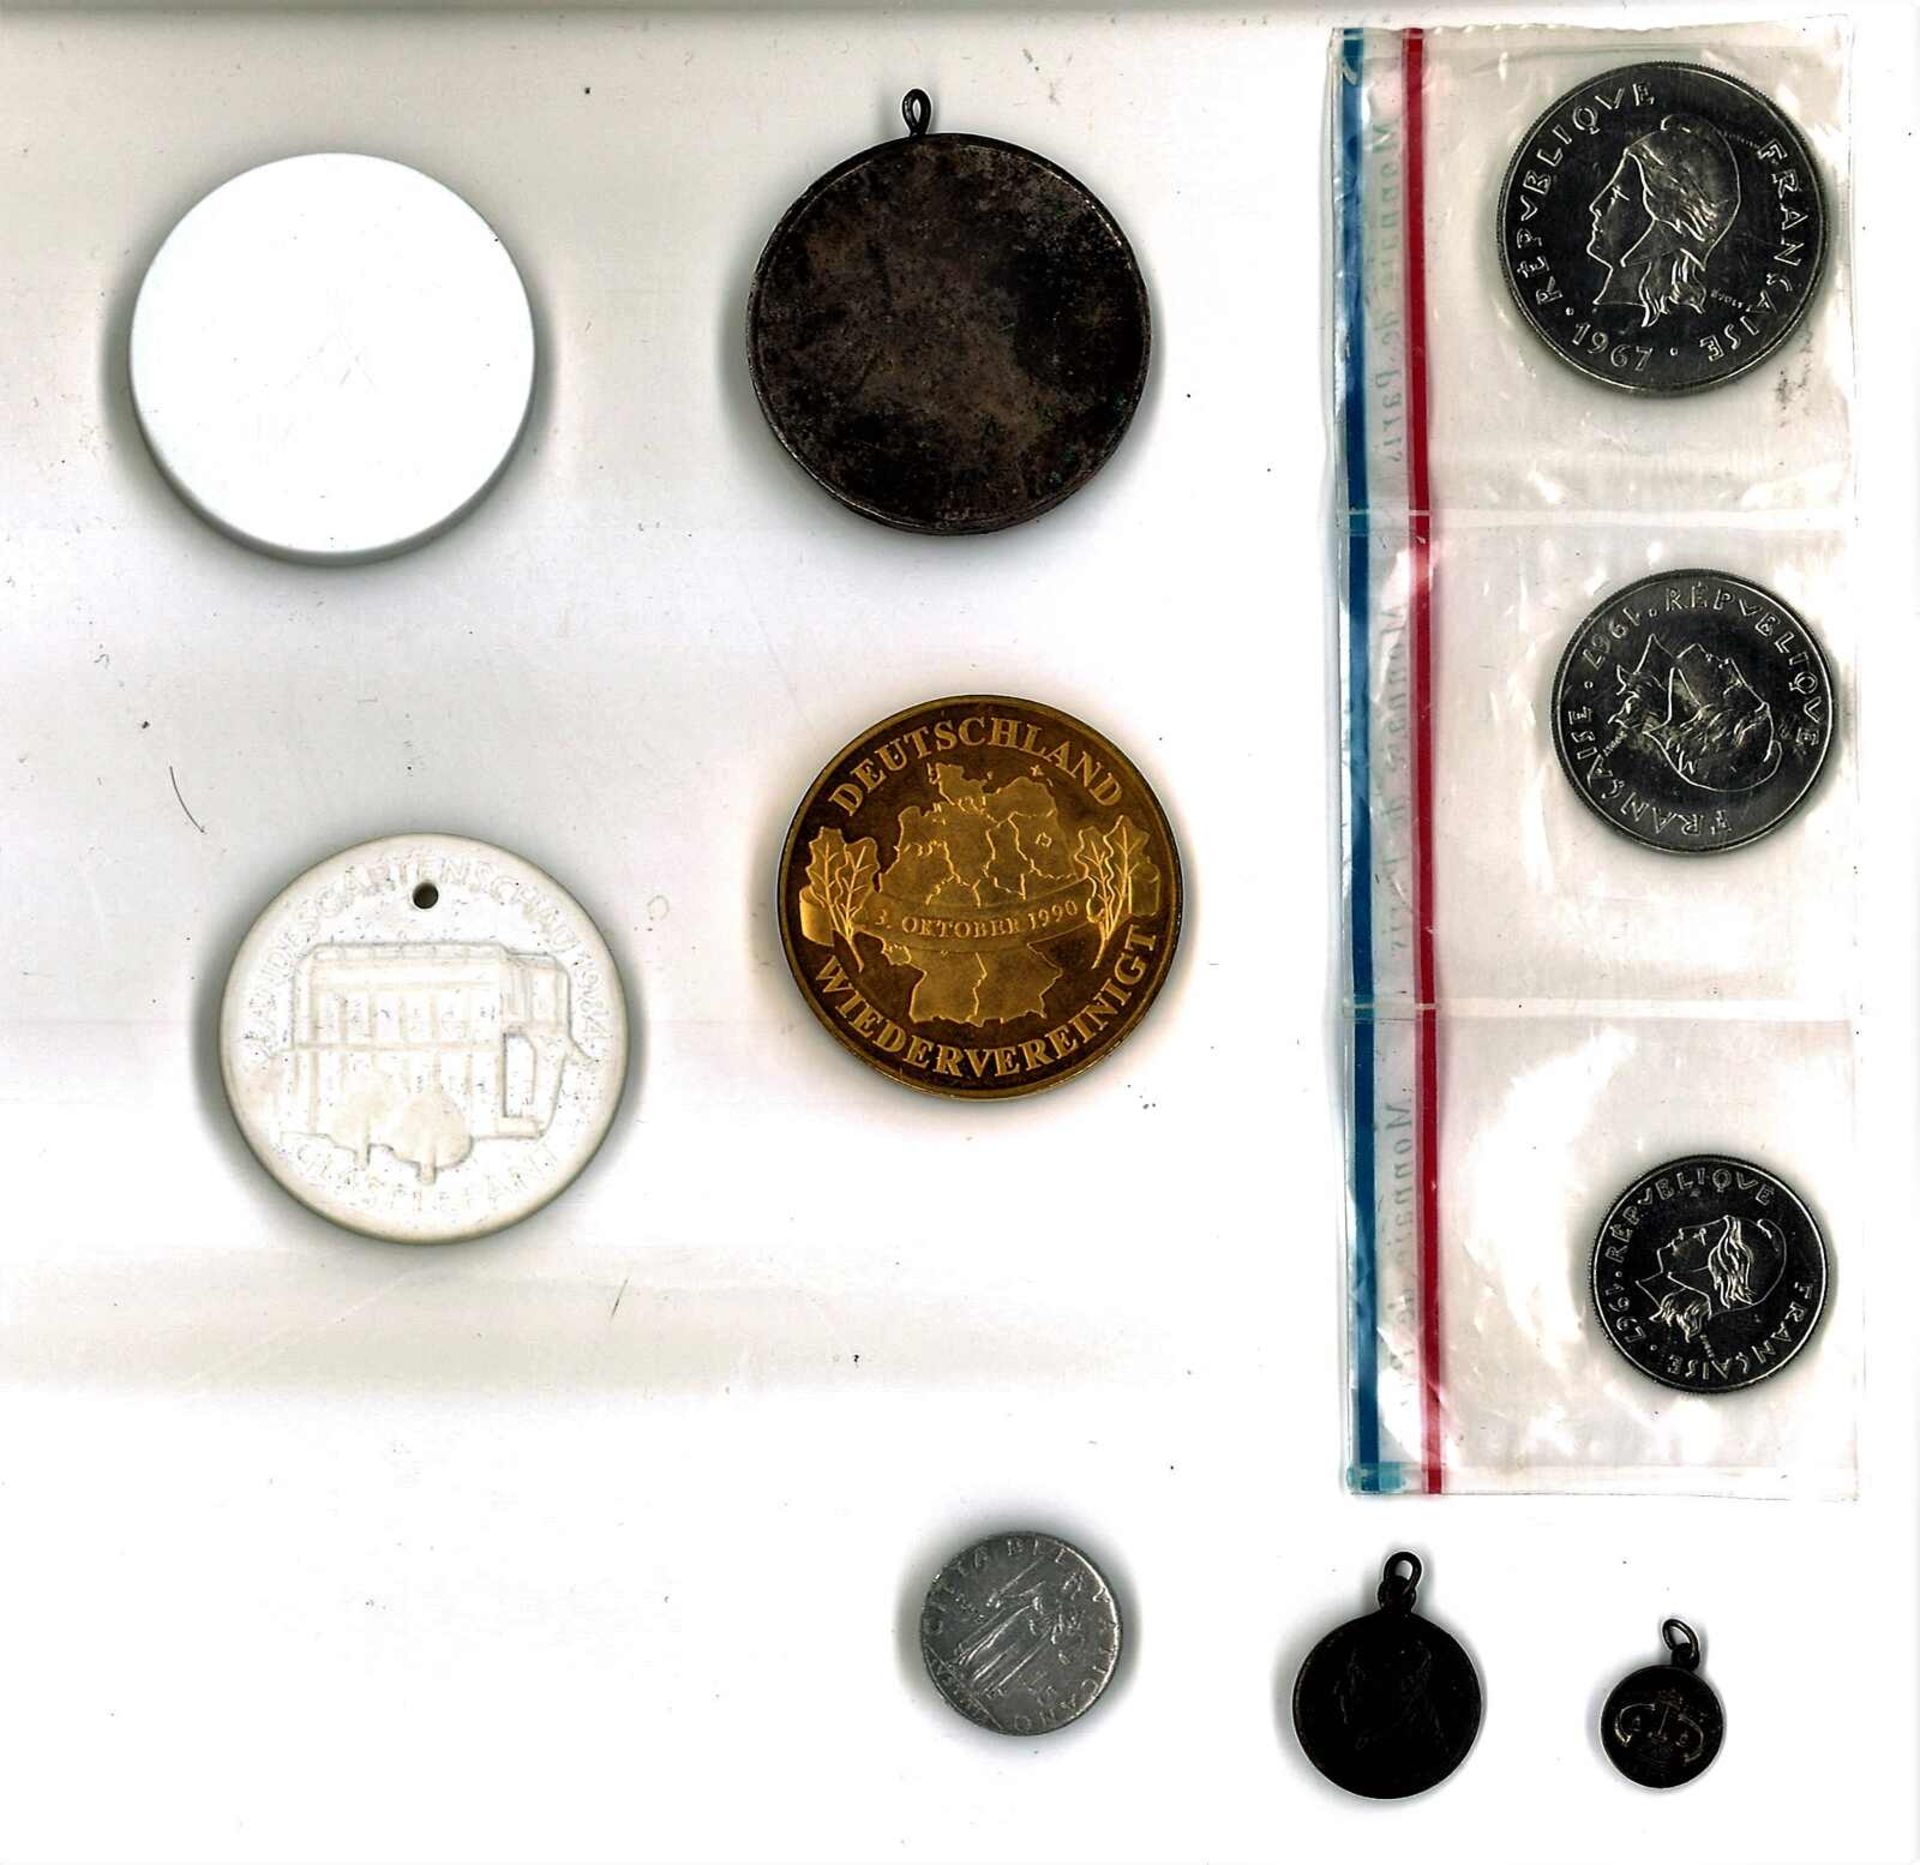 Lot Münzen und Medaillen alle Welt, dabei auch 2x Meissen, sowie 1 Münzsatz Frz. Polynesien, etc. - Image 2 of 3